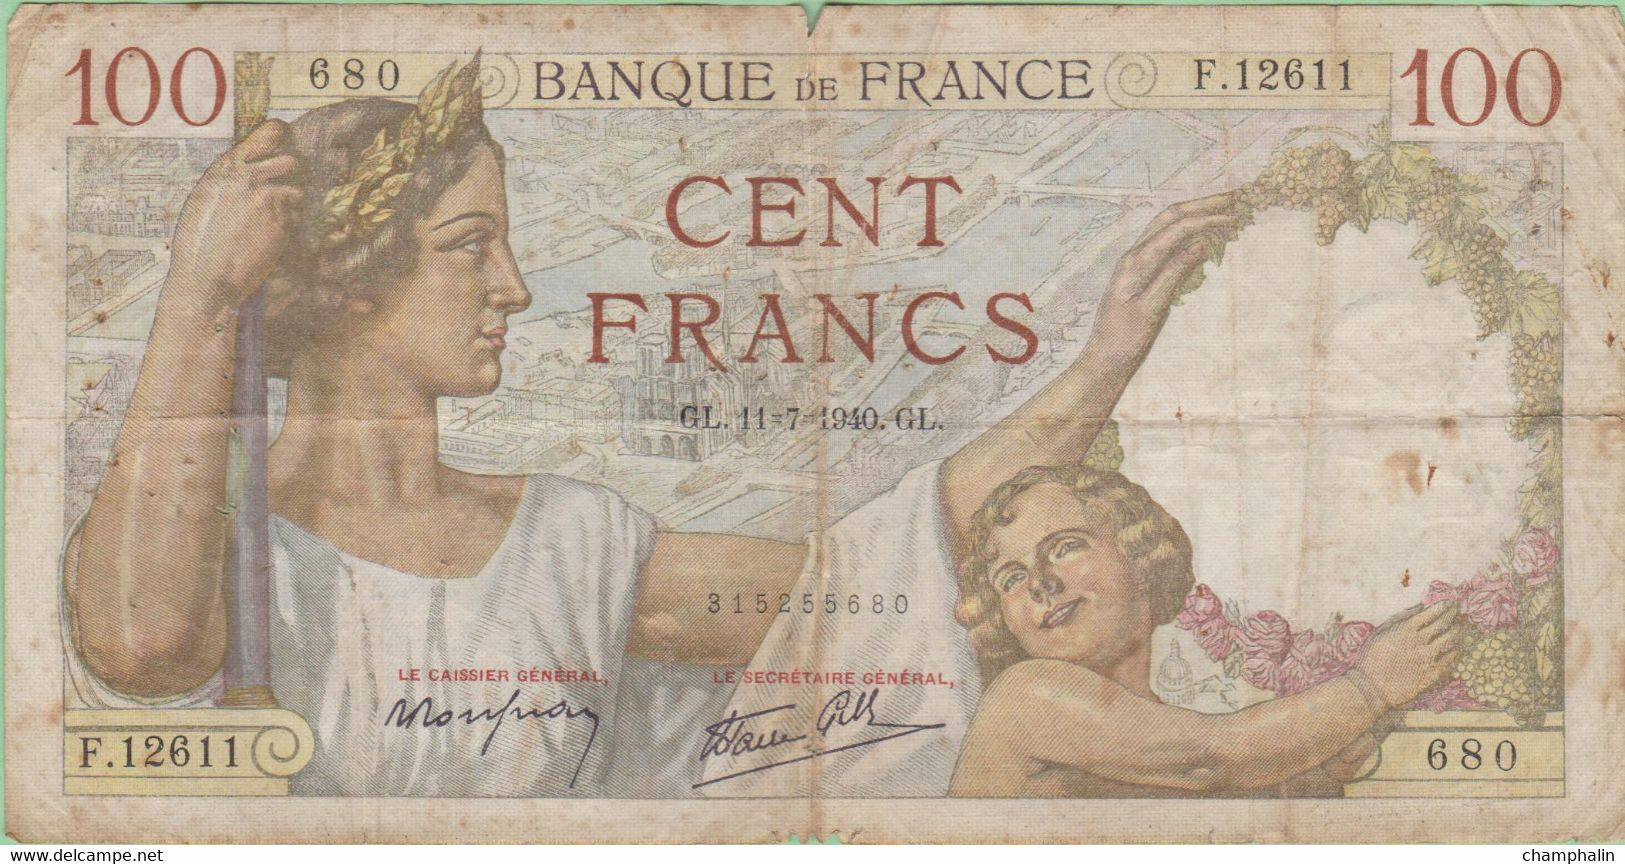 France - Billet De 100 Francs Type Sully - 11 Juillet 1940 - 100 F 1939-1942 ''Sully''